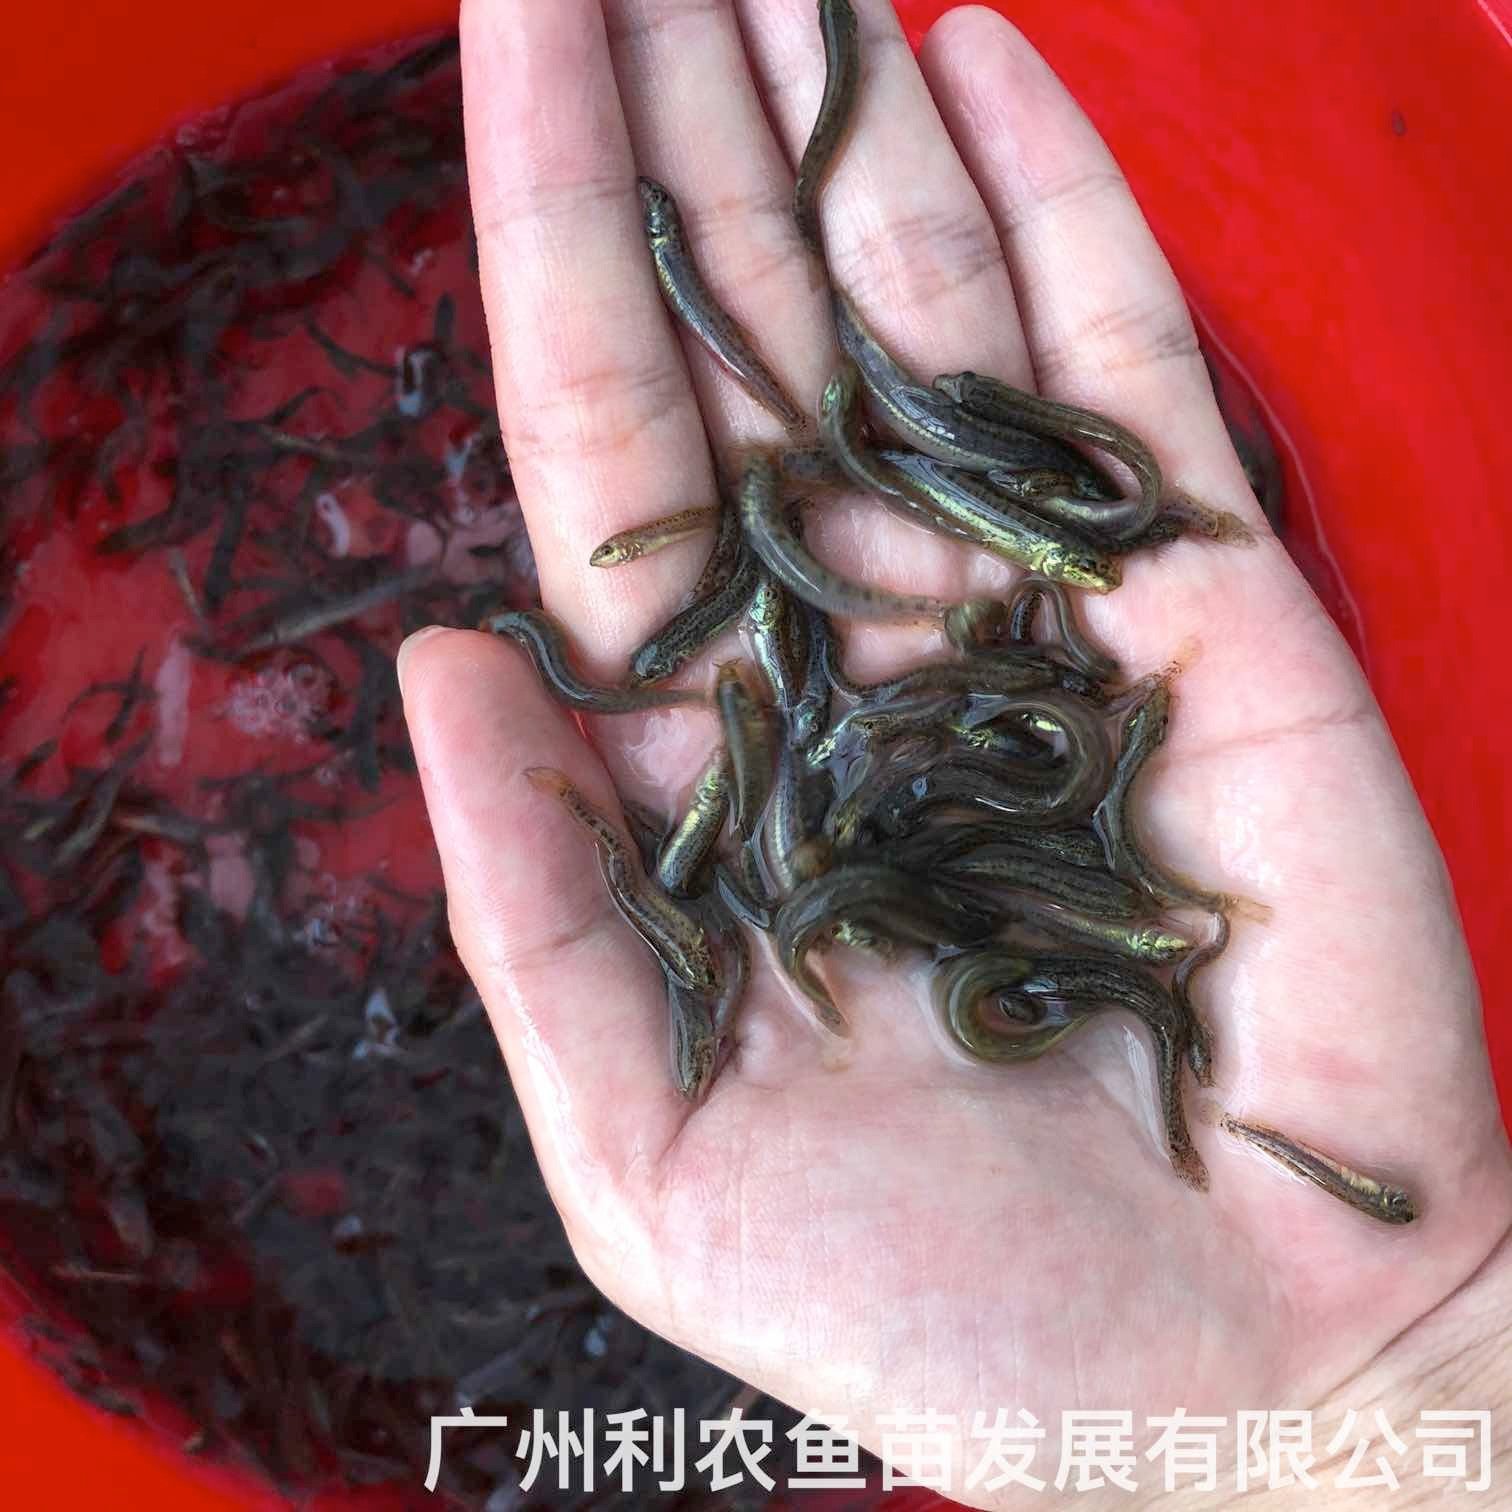 广州台湾泥鳅苗出售茂名泥鳅鱼苗批发